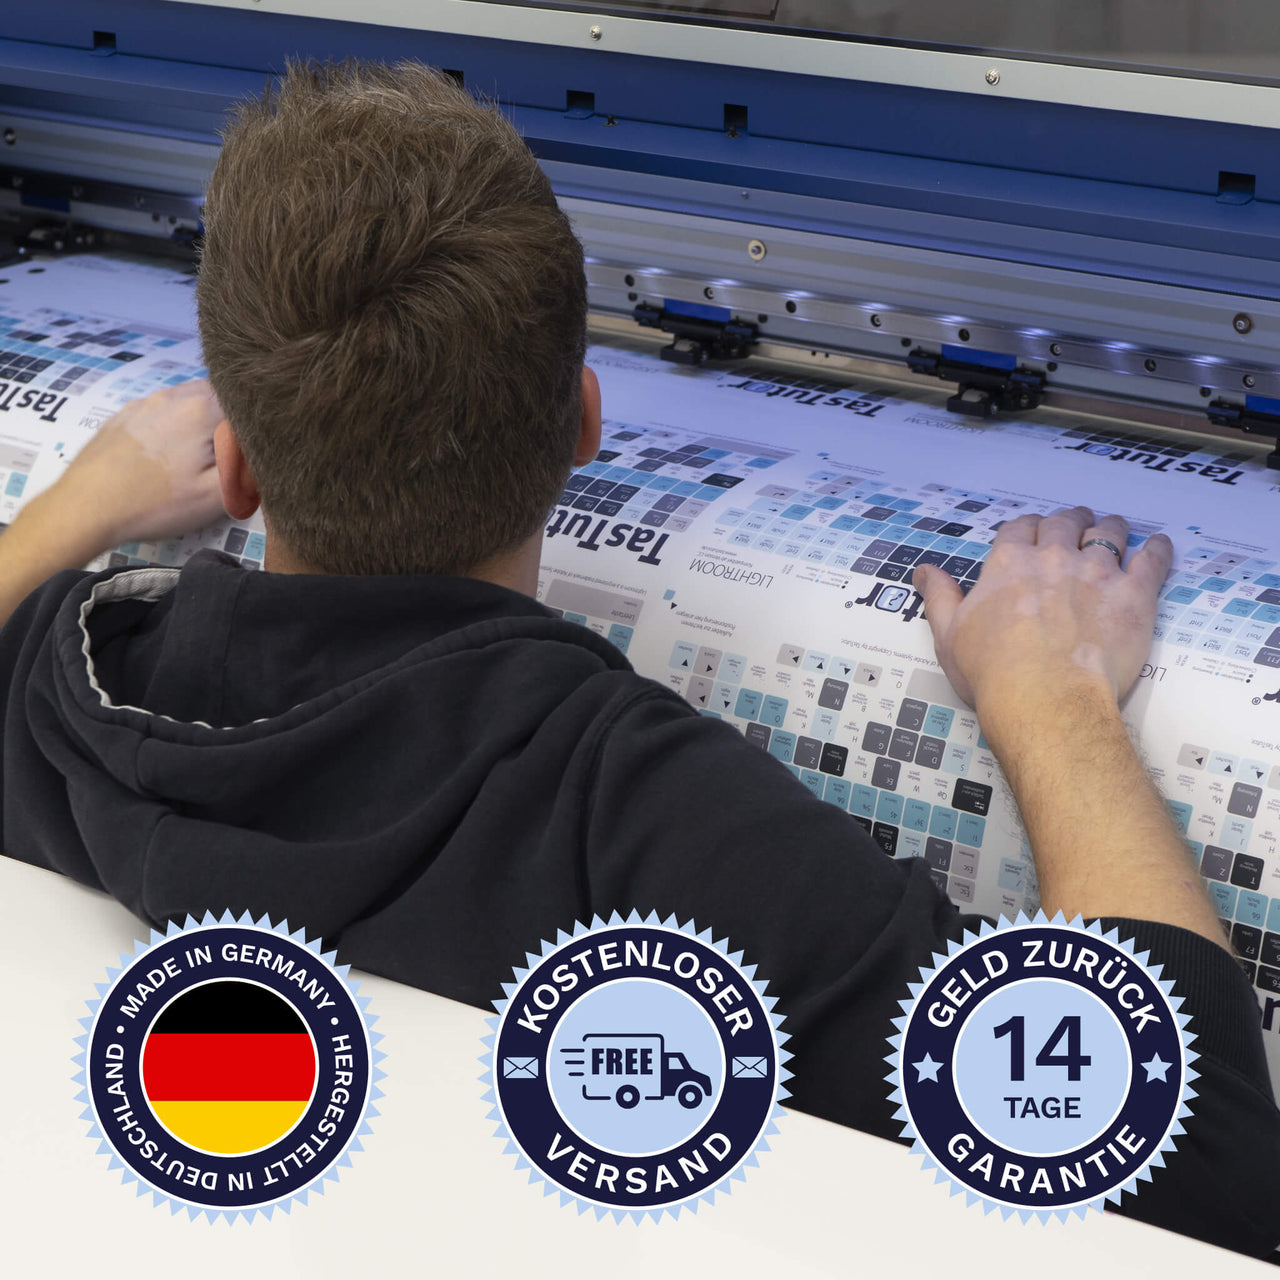 Illustrator Tastaturaufkleber werden in Deutschland hergestellt. Der Versand ist kostenlos und wir gewährleisten 14 Tage Geld zurück Garantie | TasTutor